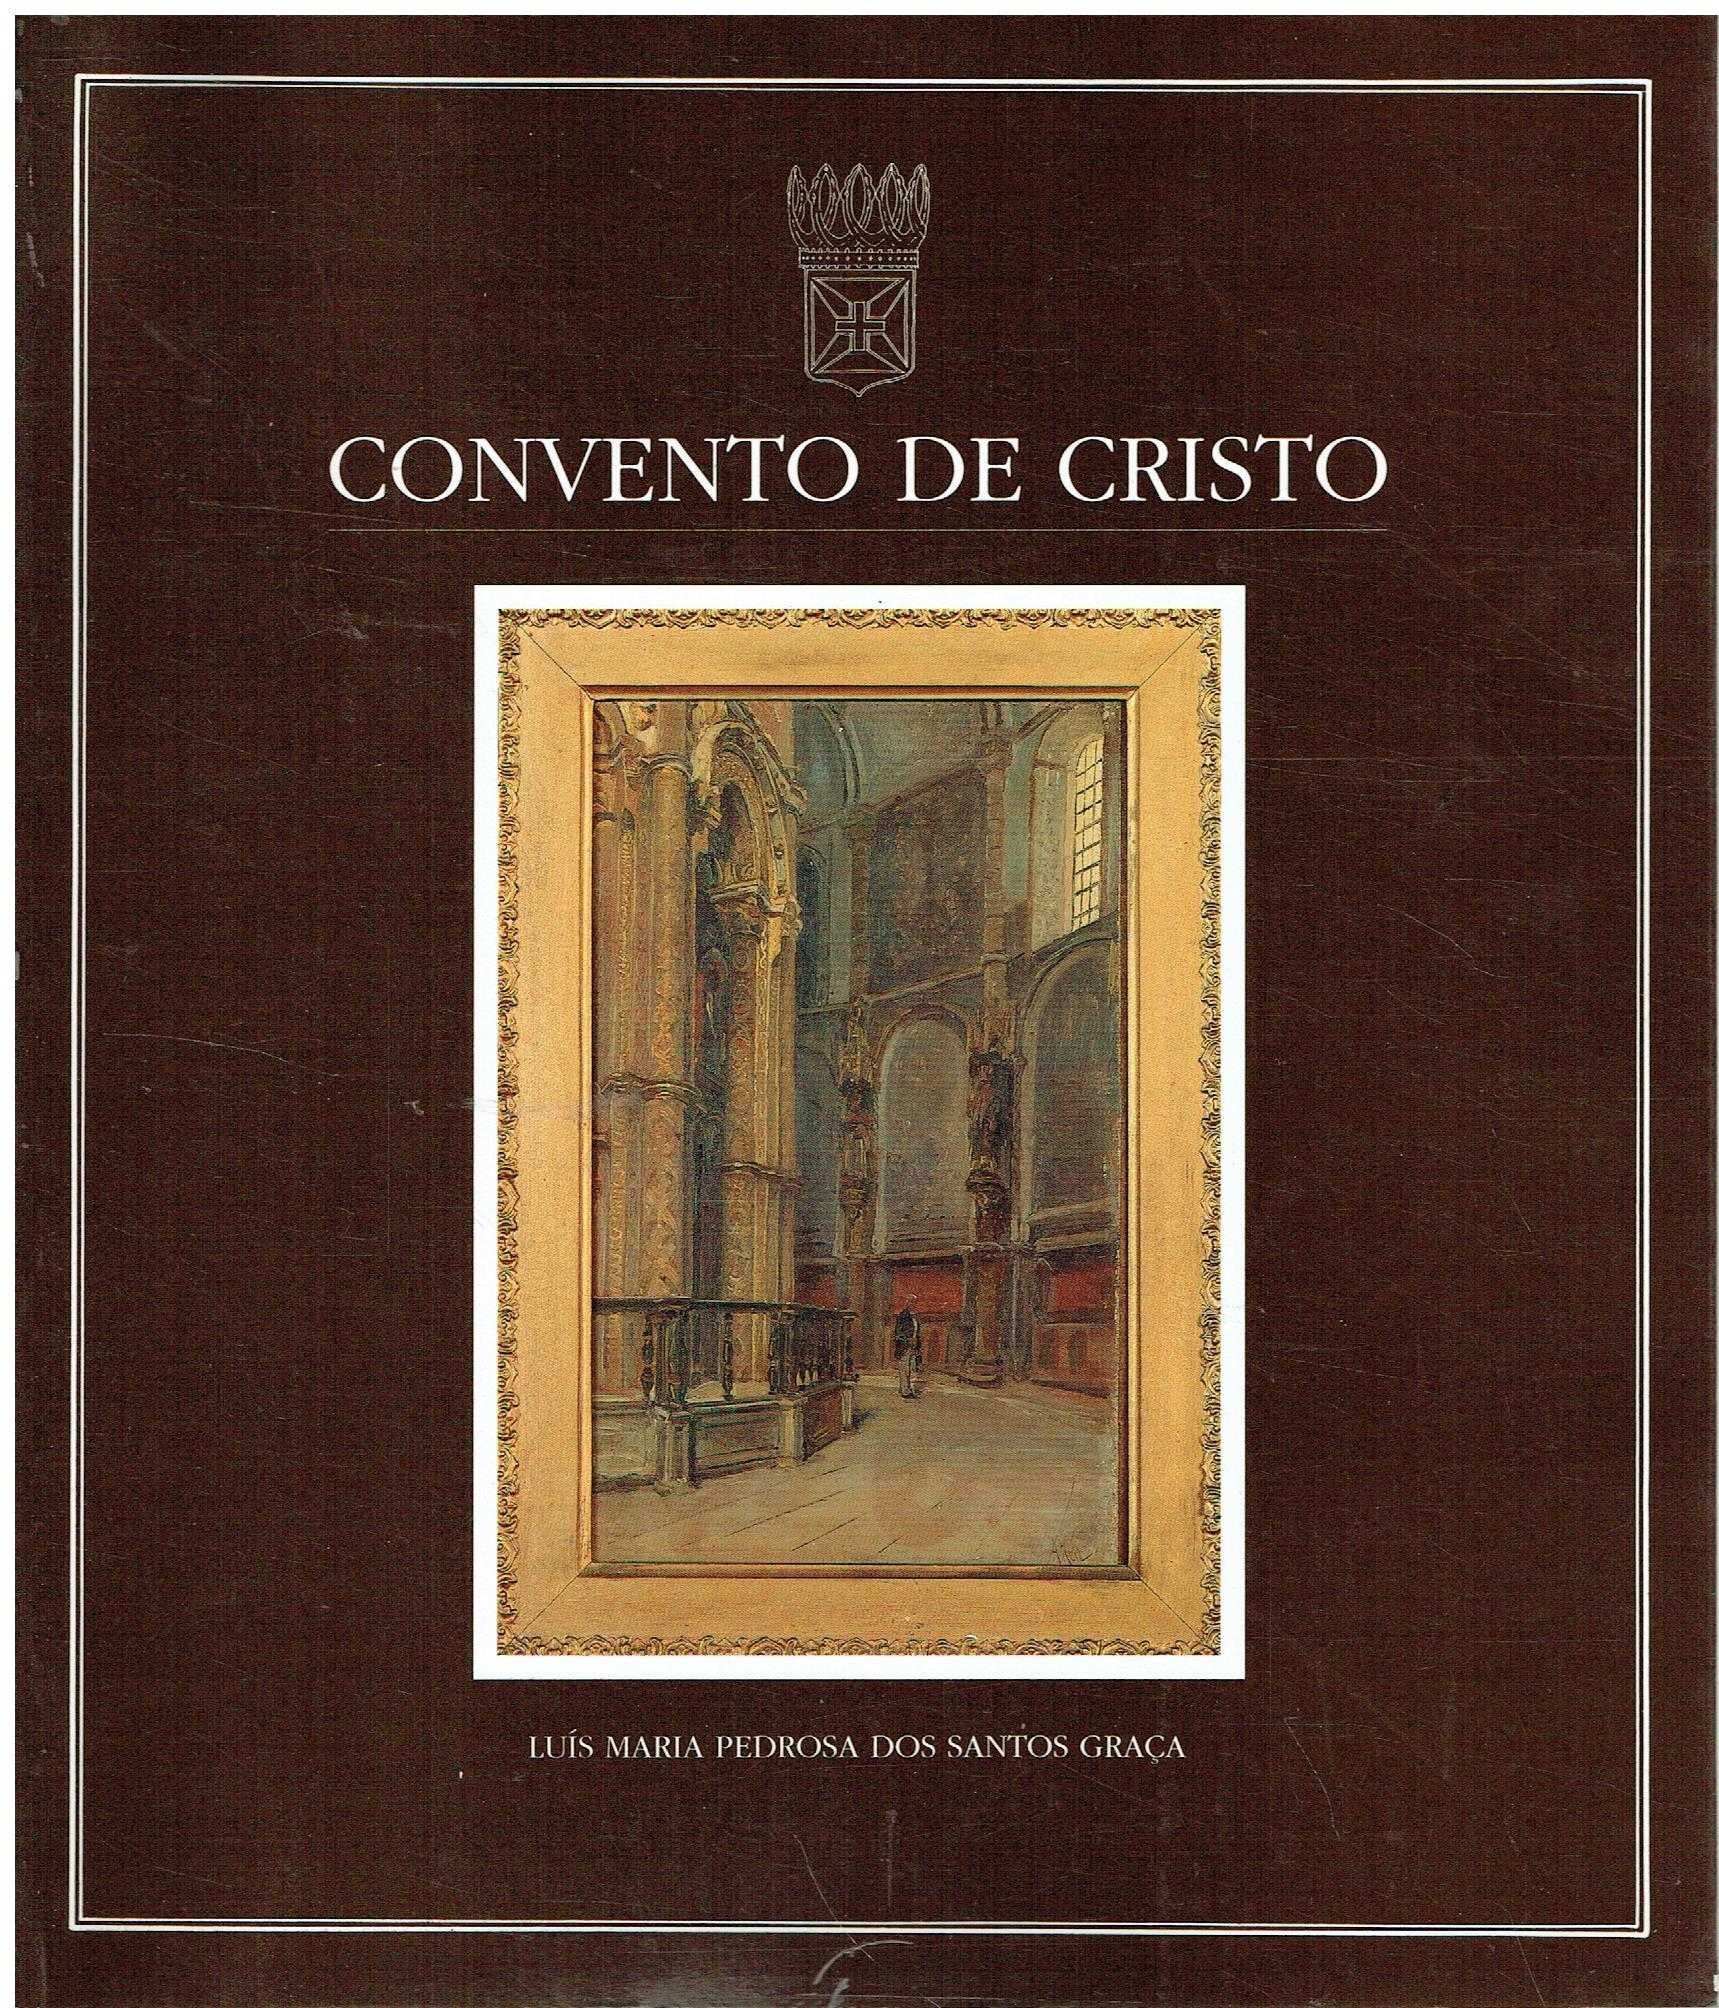 3186

Convento de Cristo
de Luís Maria Pedrosa Dos Santos Graça